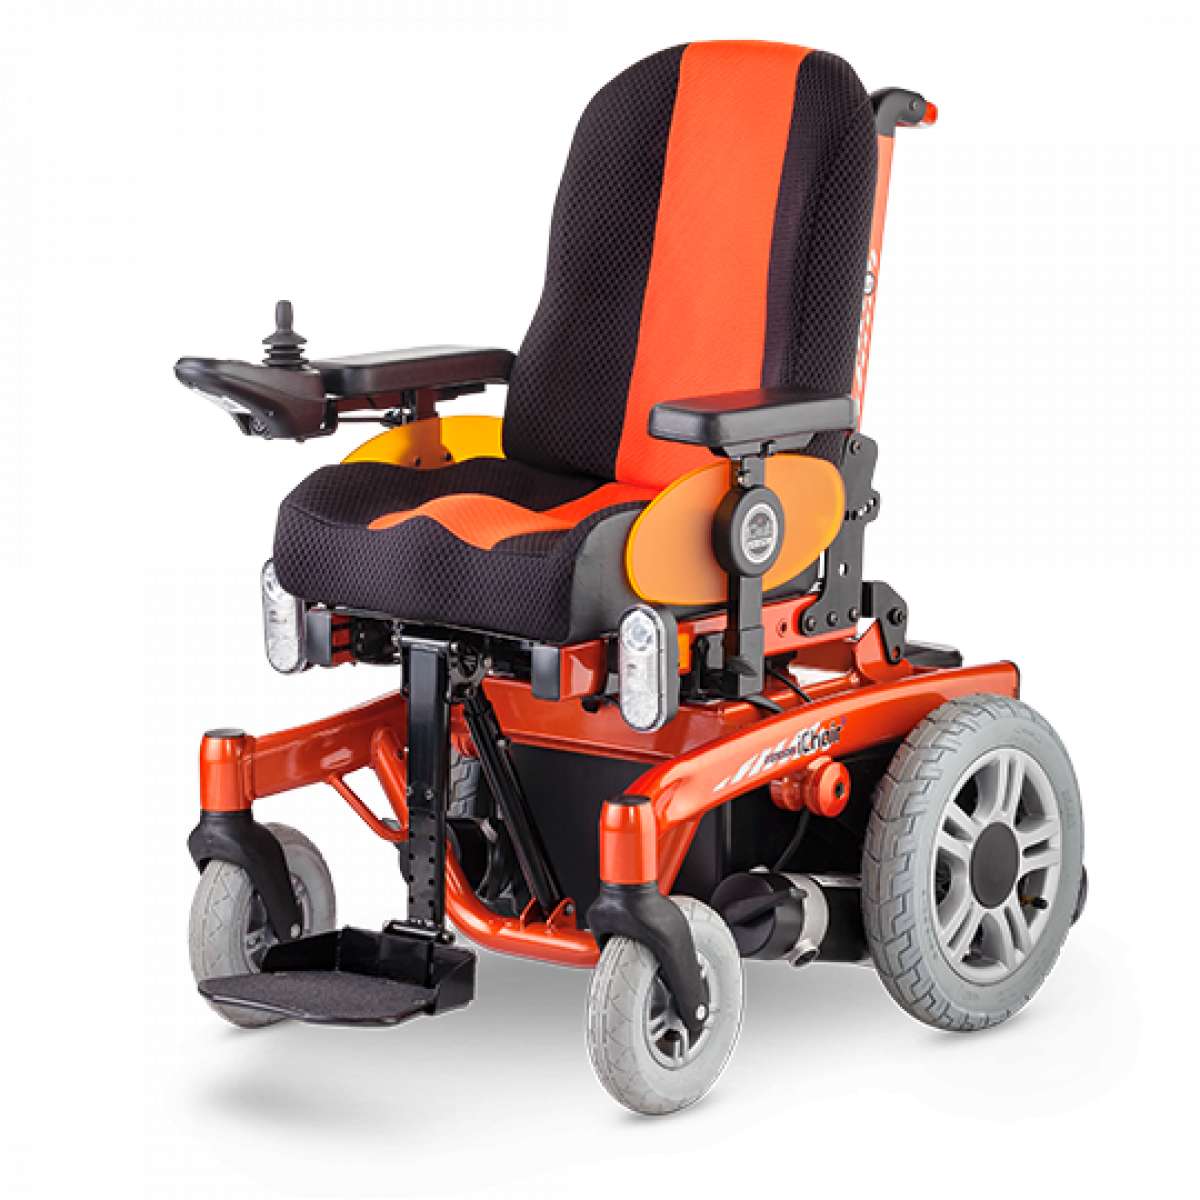 Инвалидная кресло-коляска с электроприводом iChair MC S